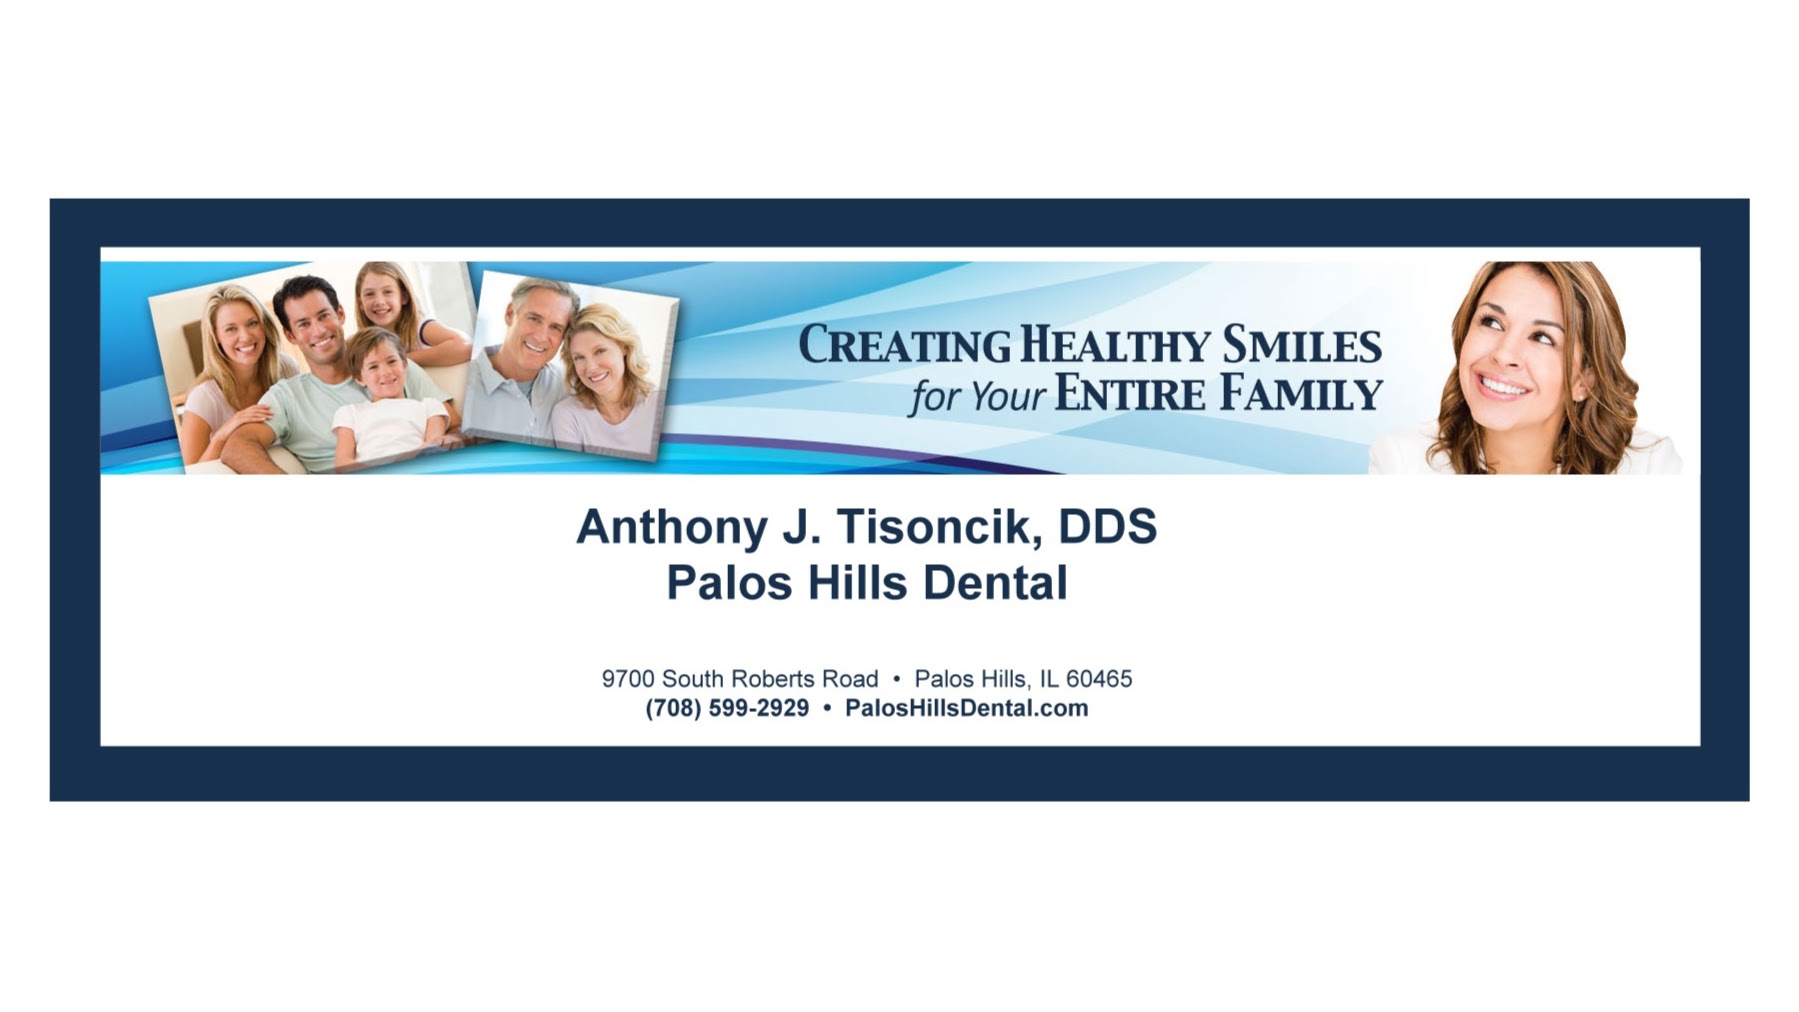 Image 3 | Palos Hills Dental, Anthony J. Tisoncik, DDS